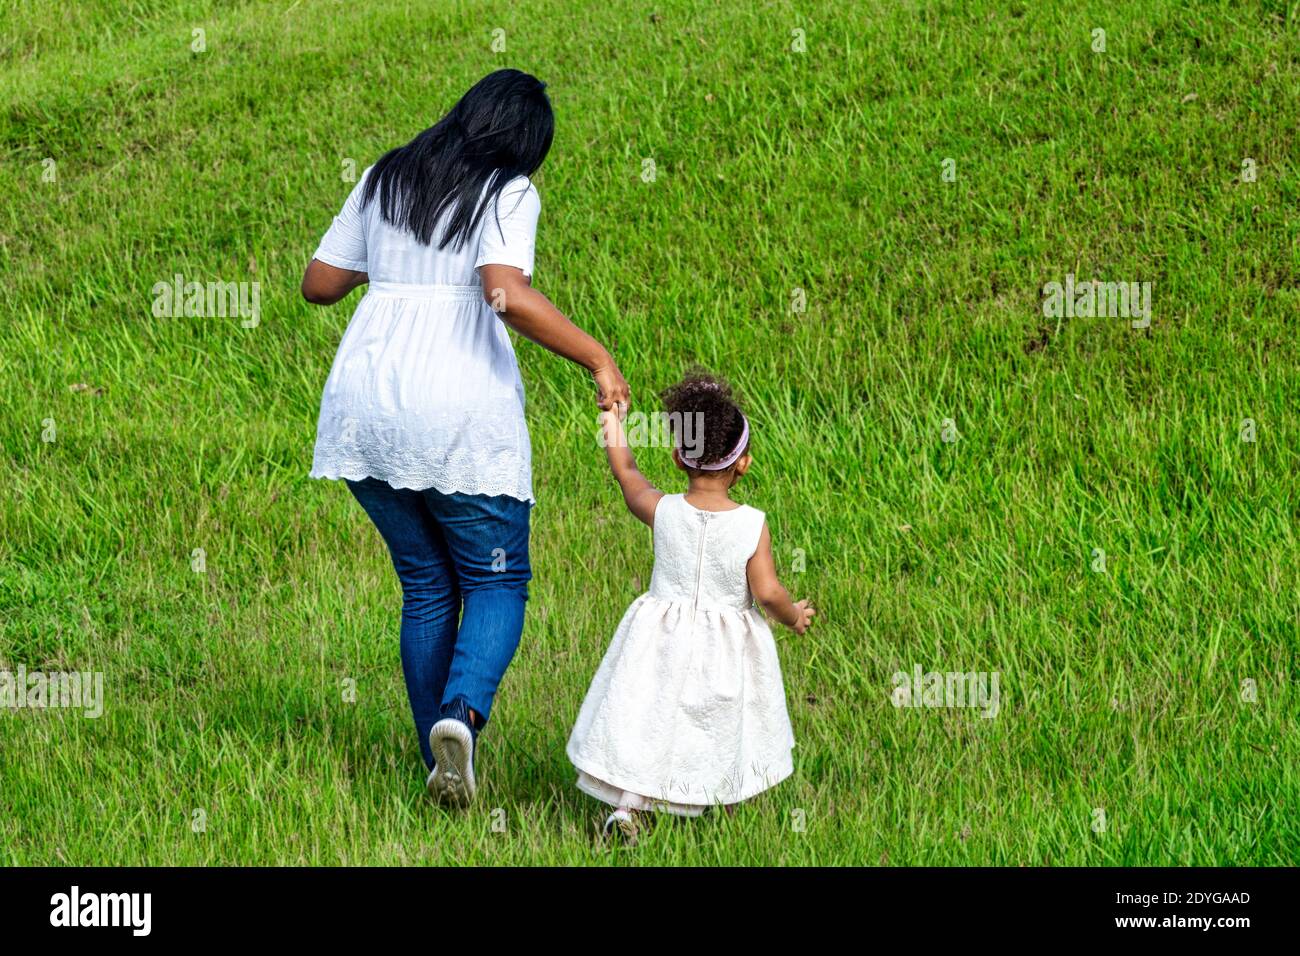 Mère afro-caribéenne et fille marchant dans une pelouse, Cuba Banque D'Images